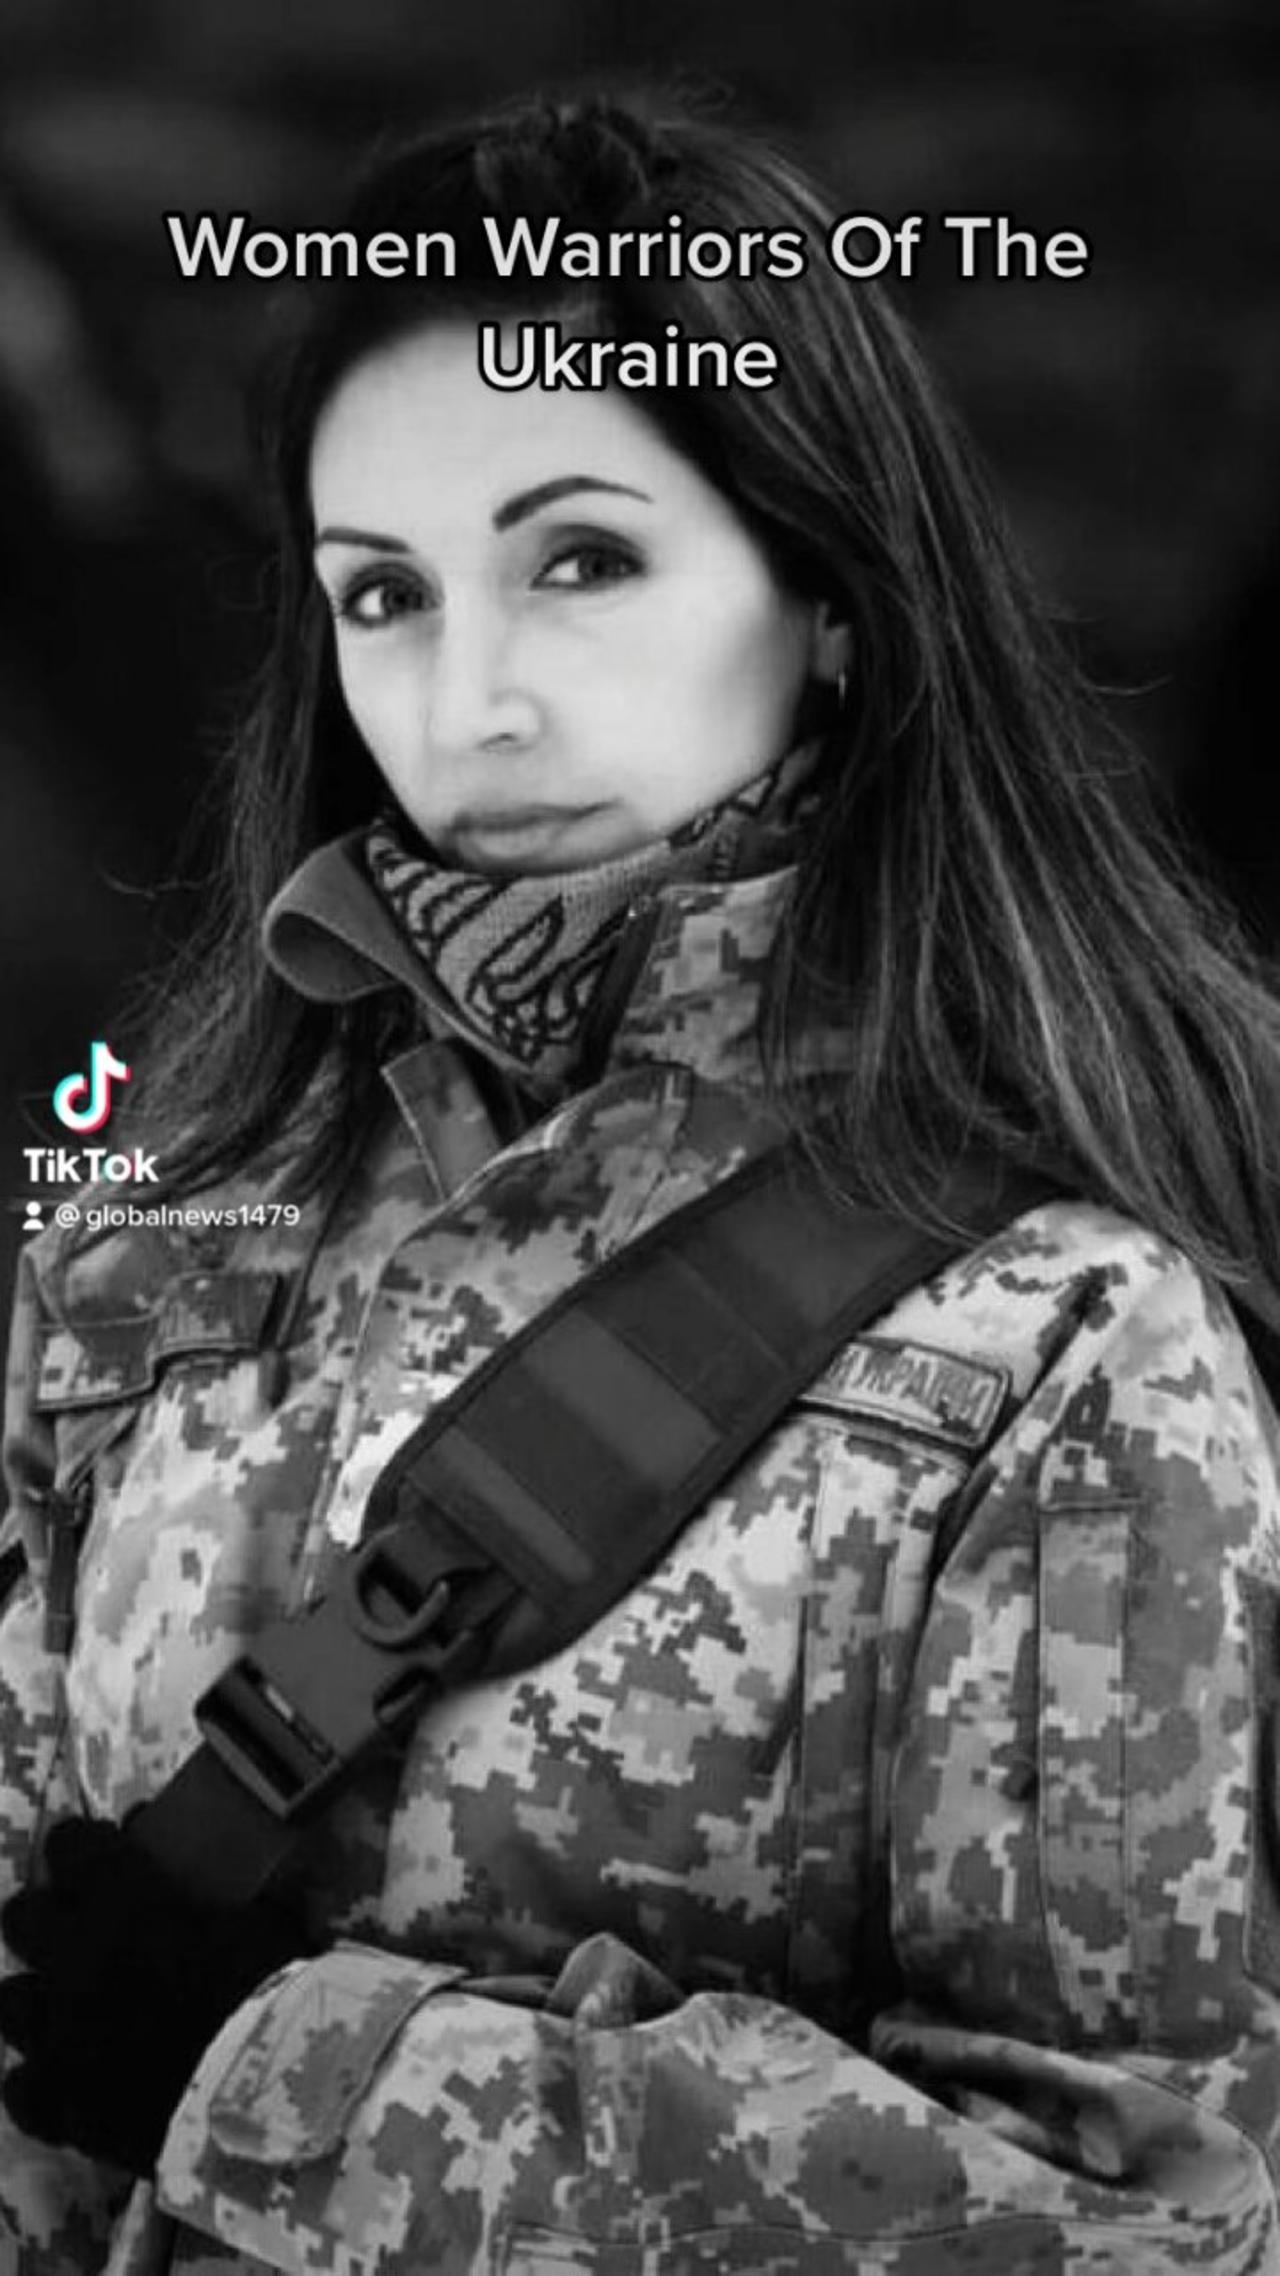 Woman warriors of Ukraine